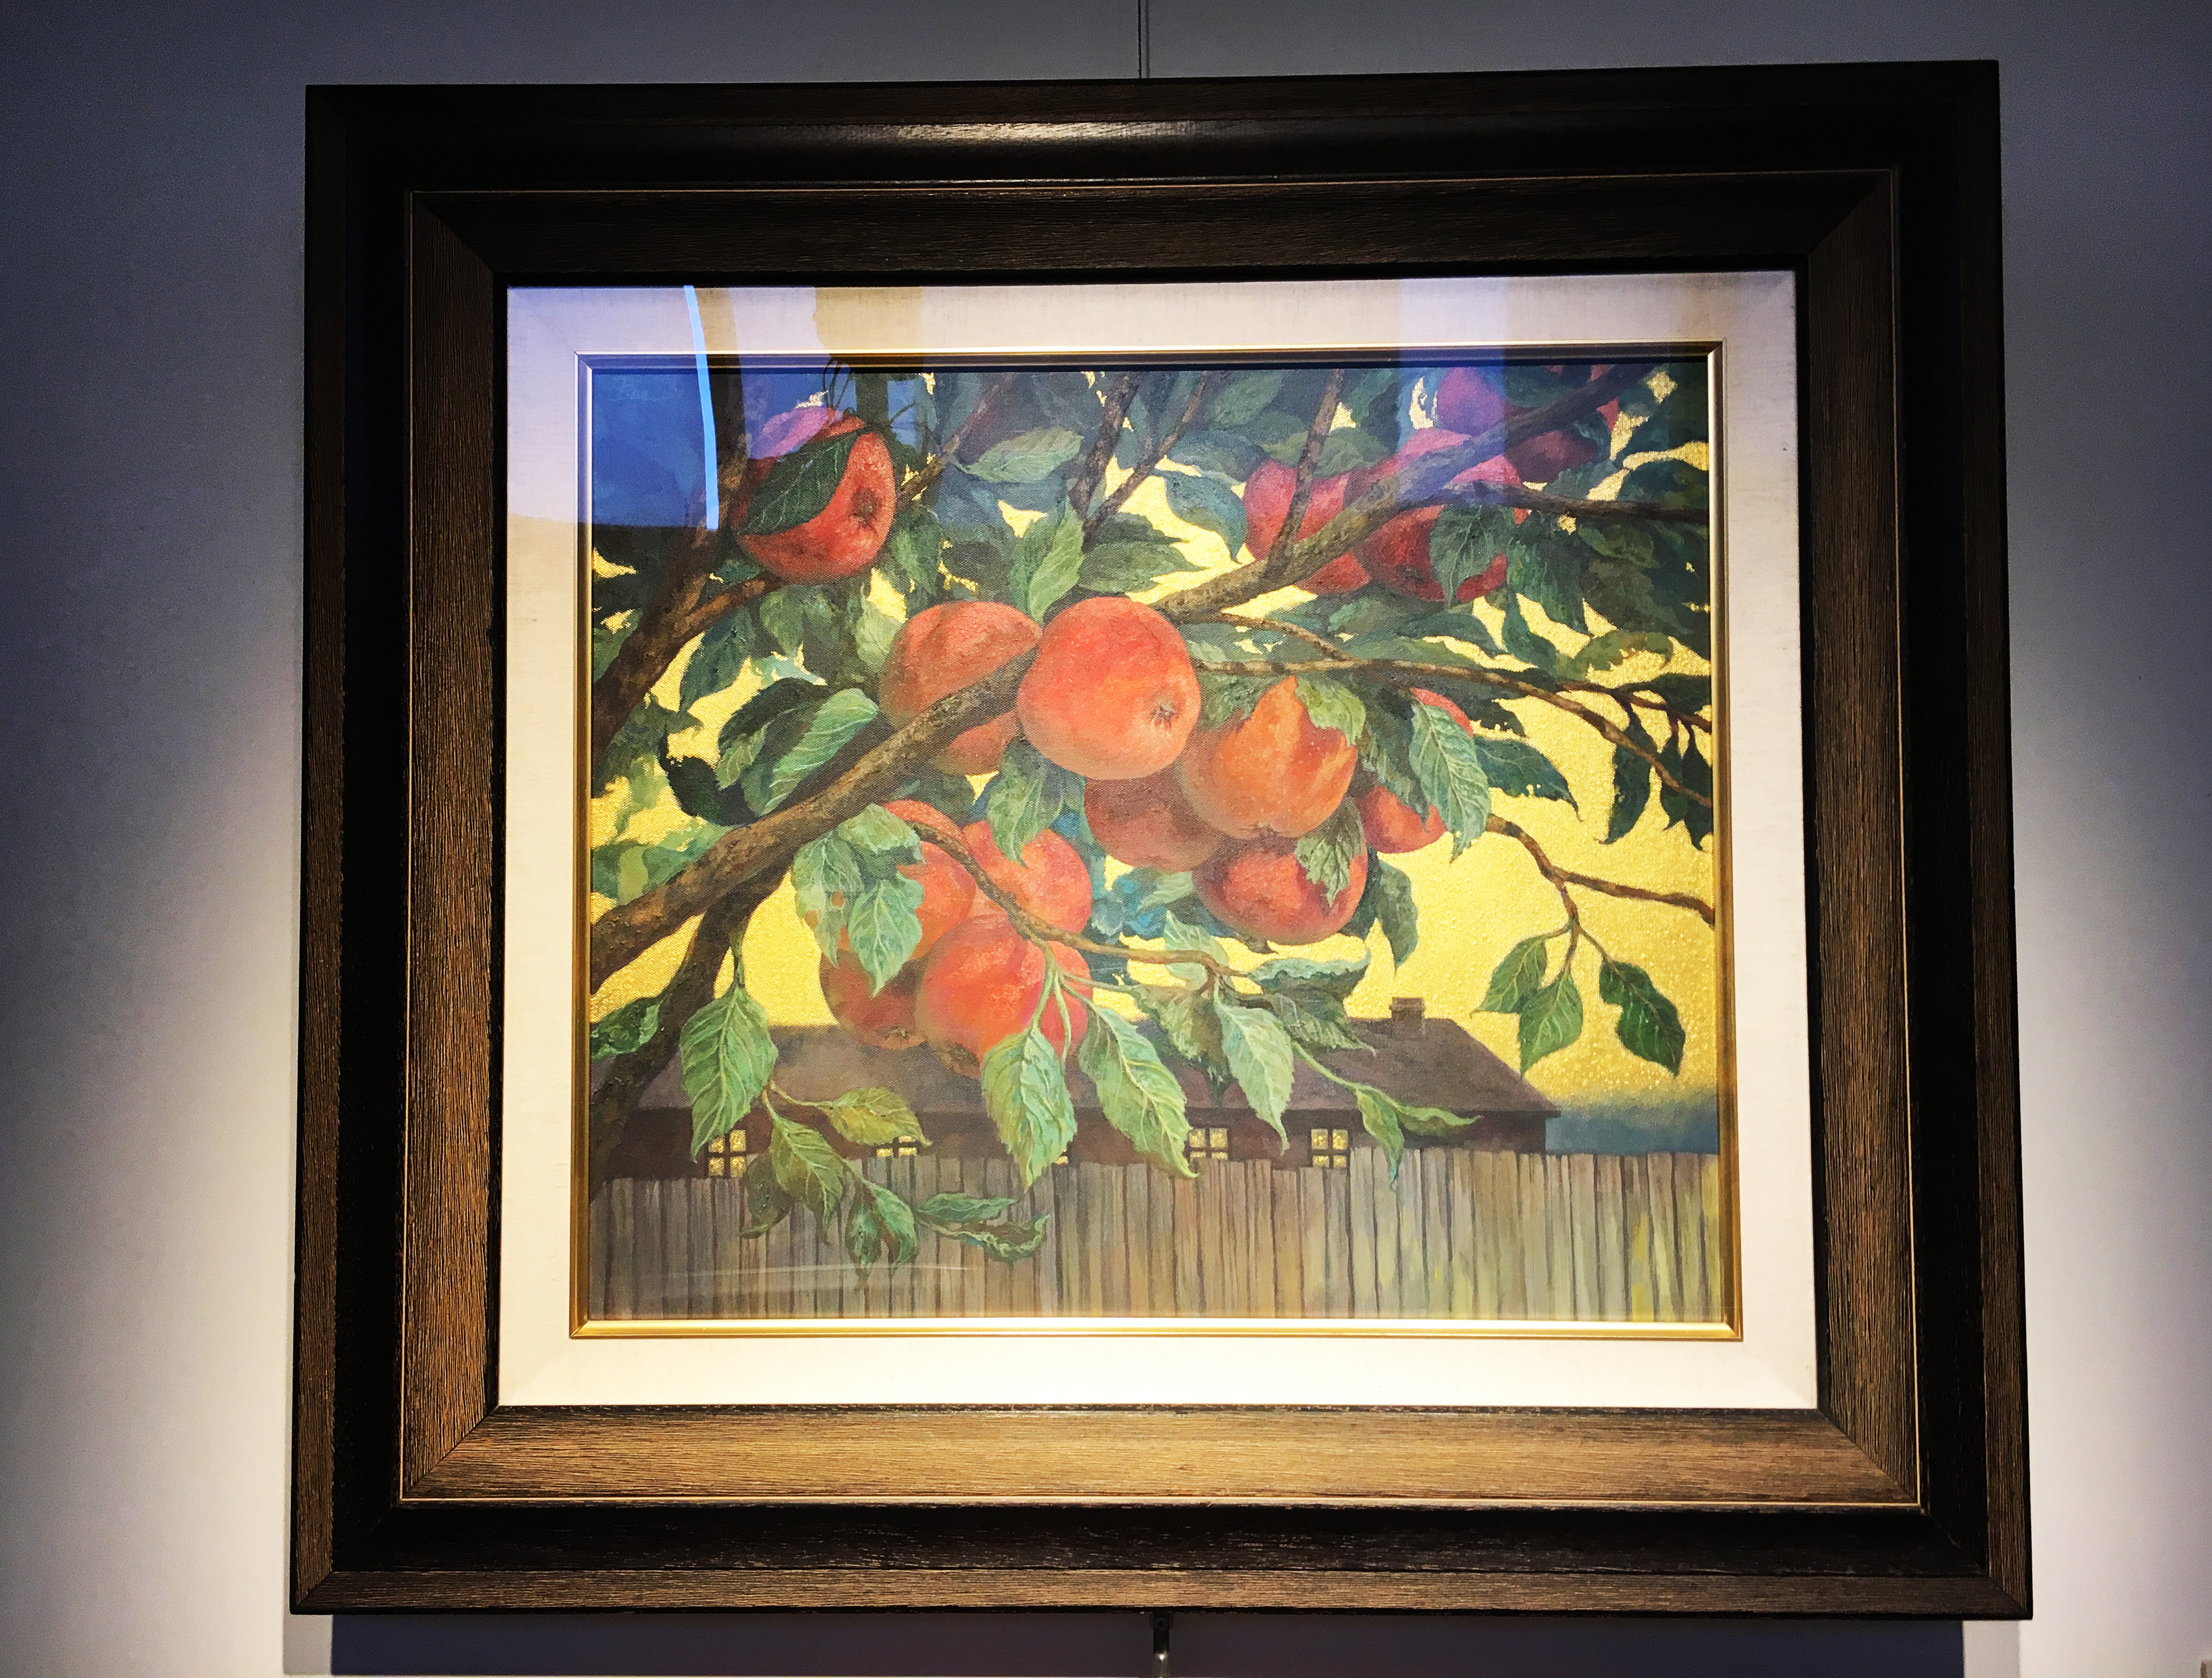 劉子平，《蘋果樹》，45.5 x 53 cm，油彩、壓克力、綜合媒材、畫布，2019。